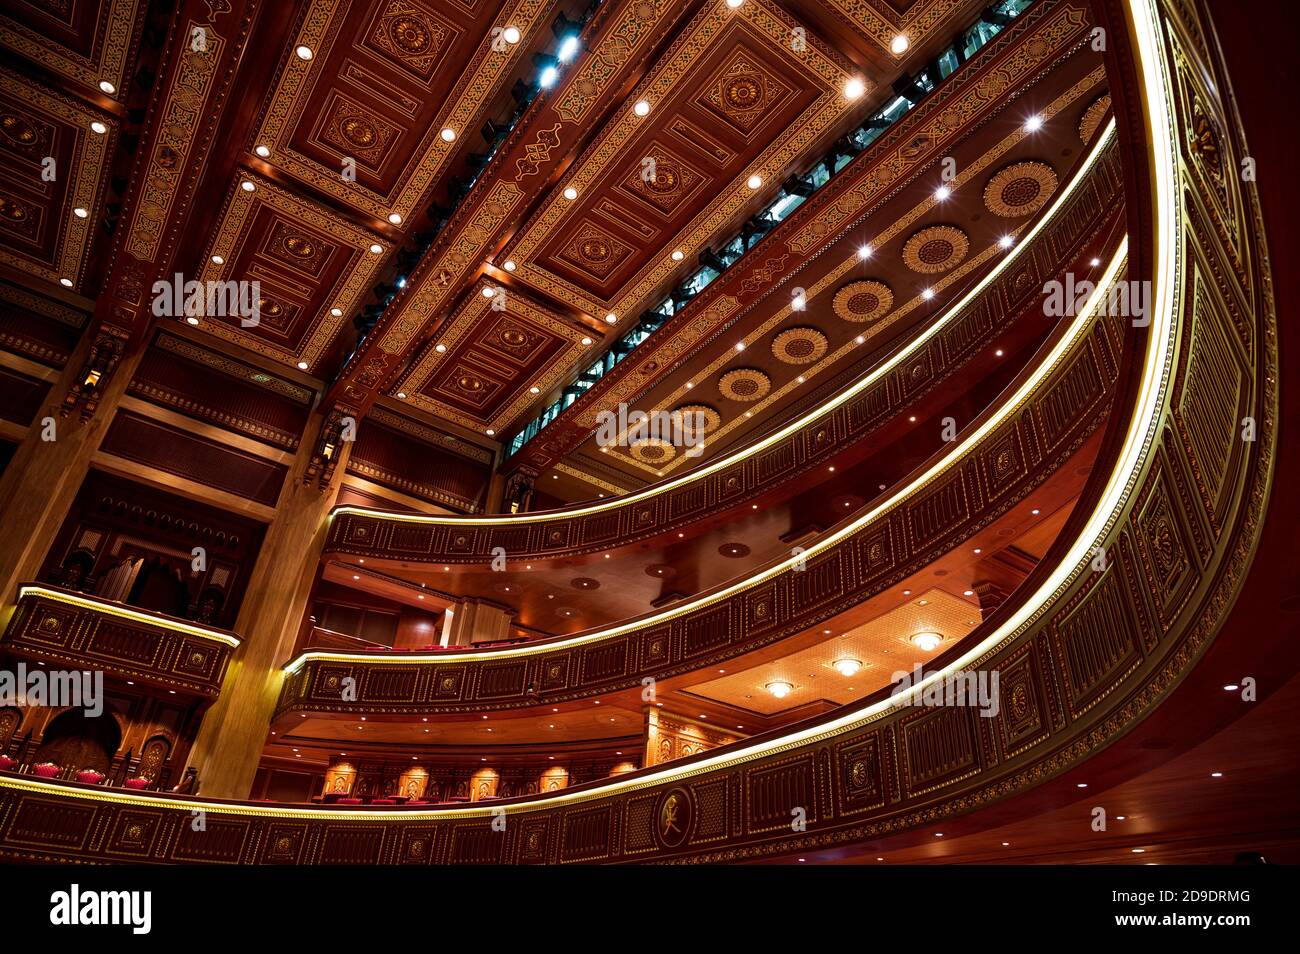 Sultanato de Omán, Mascate: La Casa Real de la Ópera. Interior Foto de stock